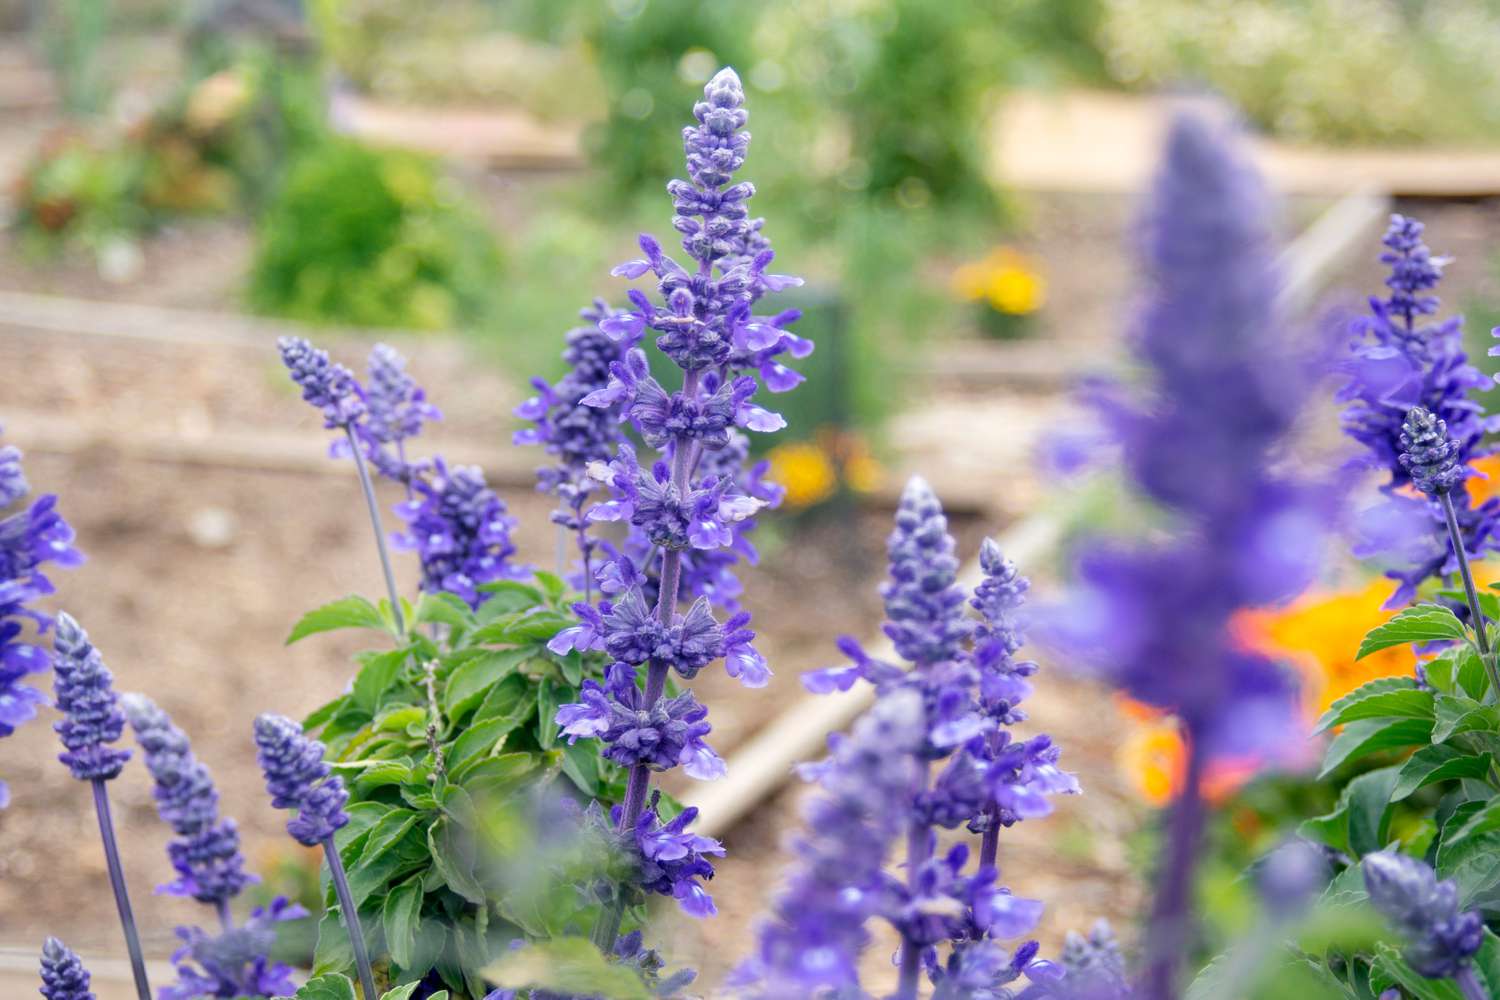 Victoria blaue Salviapflanze mit violetten Blütenstacheln, die im Garten wächst